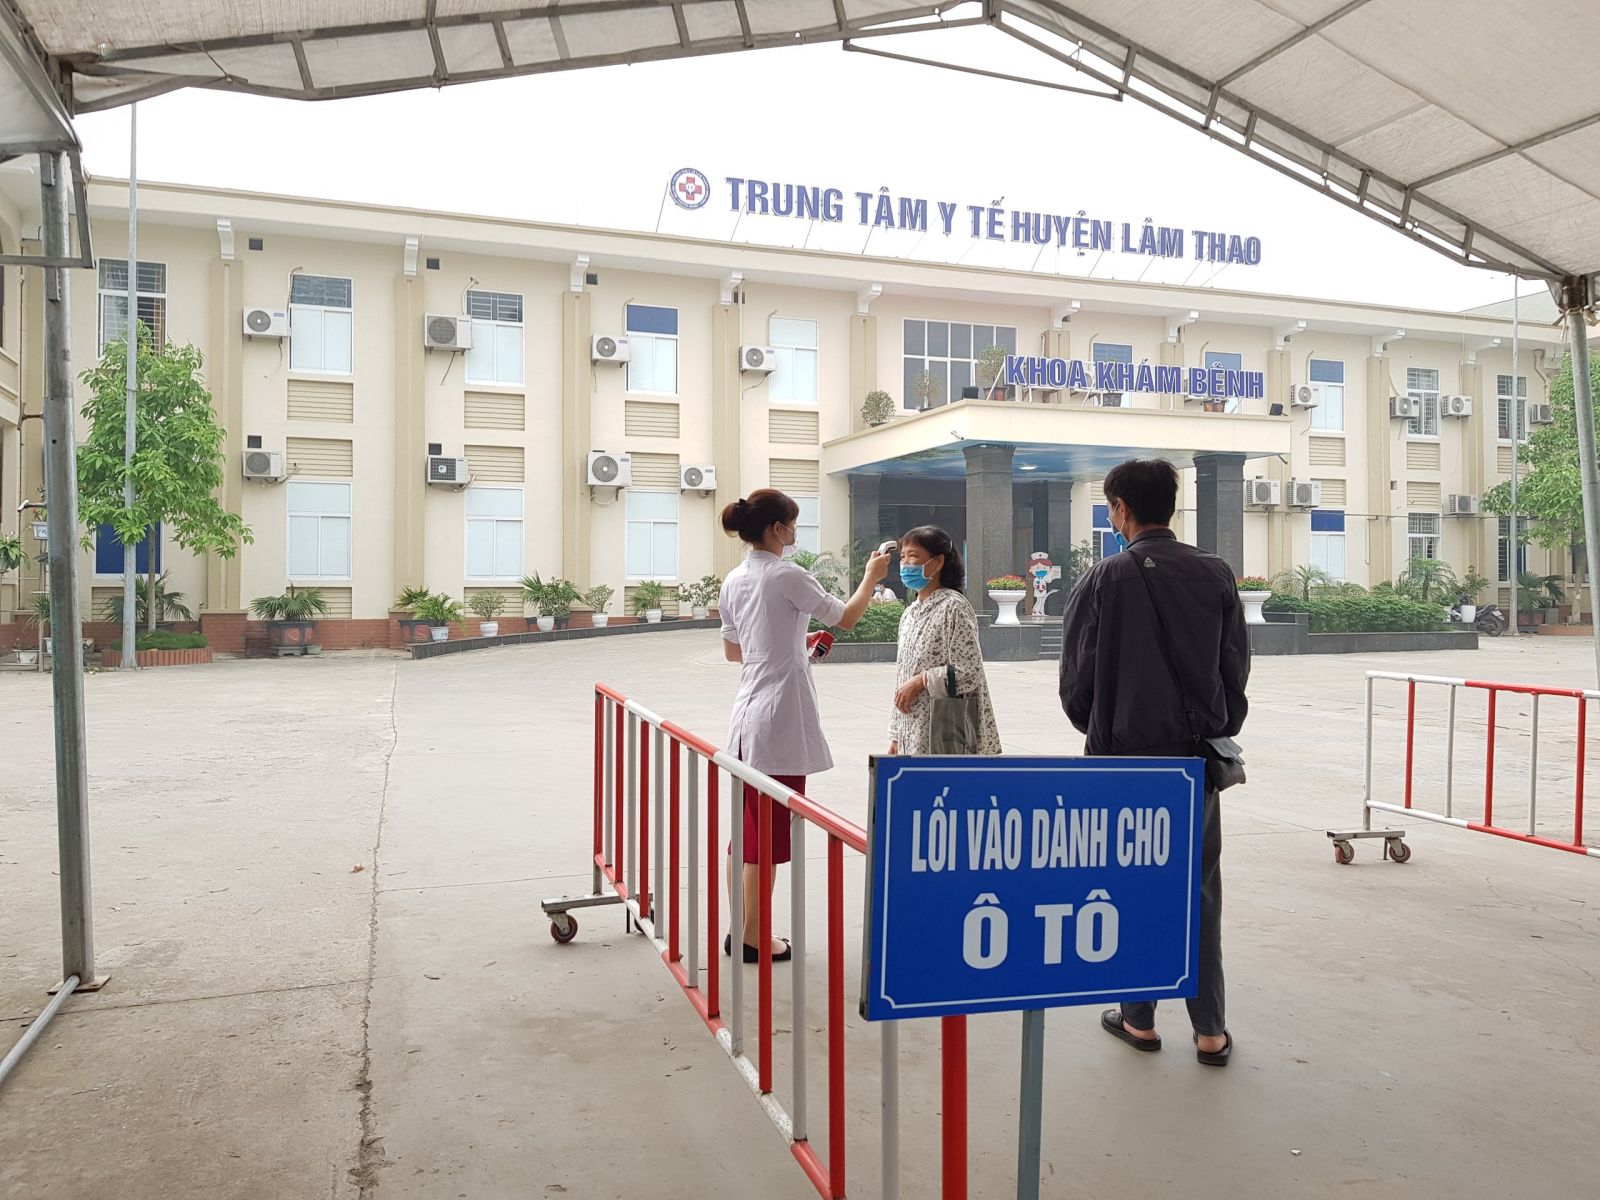 Cổng kiểm tra thân nhiệt và sàng lọc tại cổng TTYT huyện Lâm Thao, hoạt đọng 24/24 giờ.